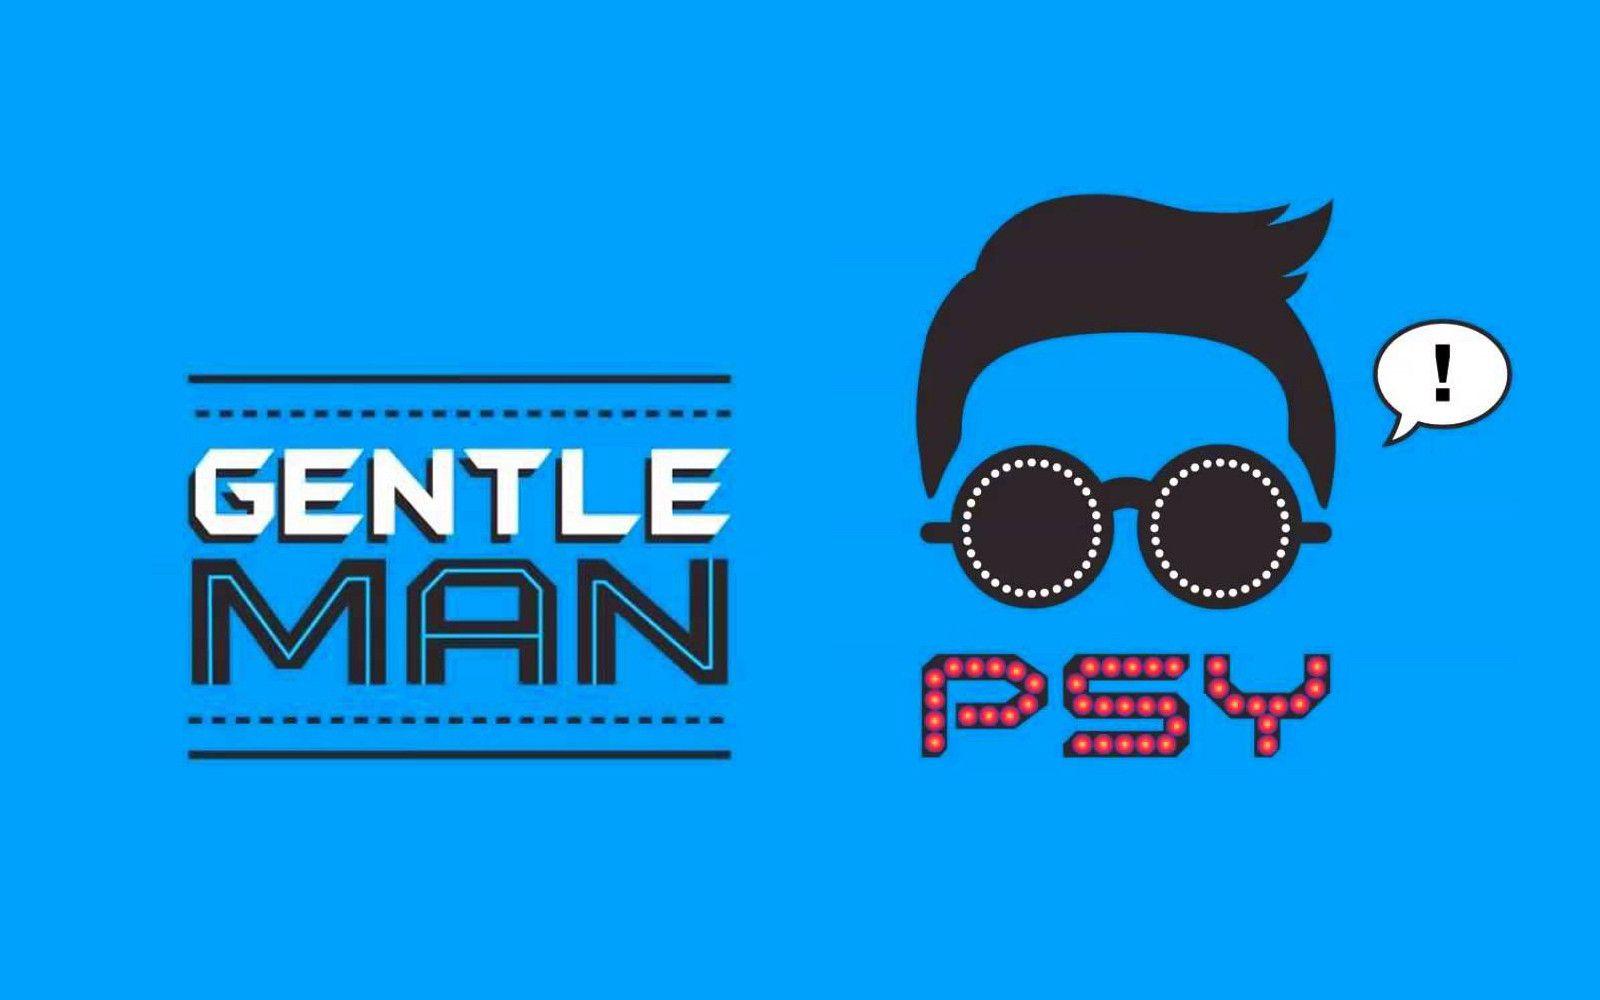 PSY Gentleman 2013 Exclusive HD Wallpaper #